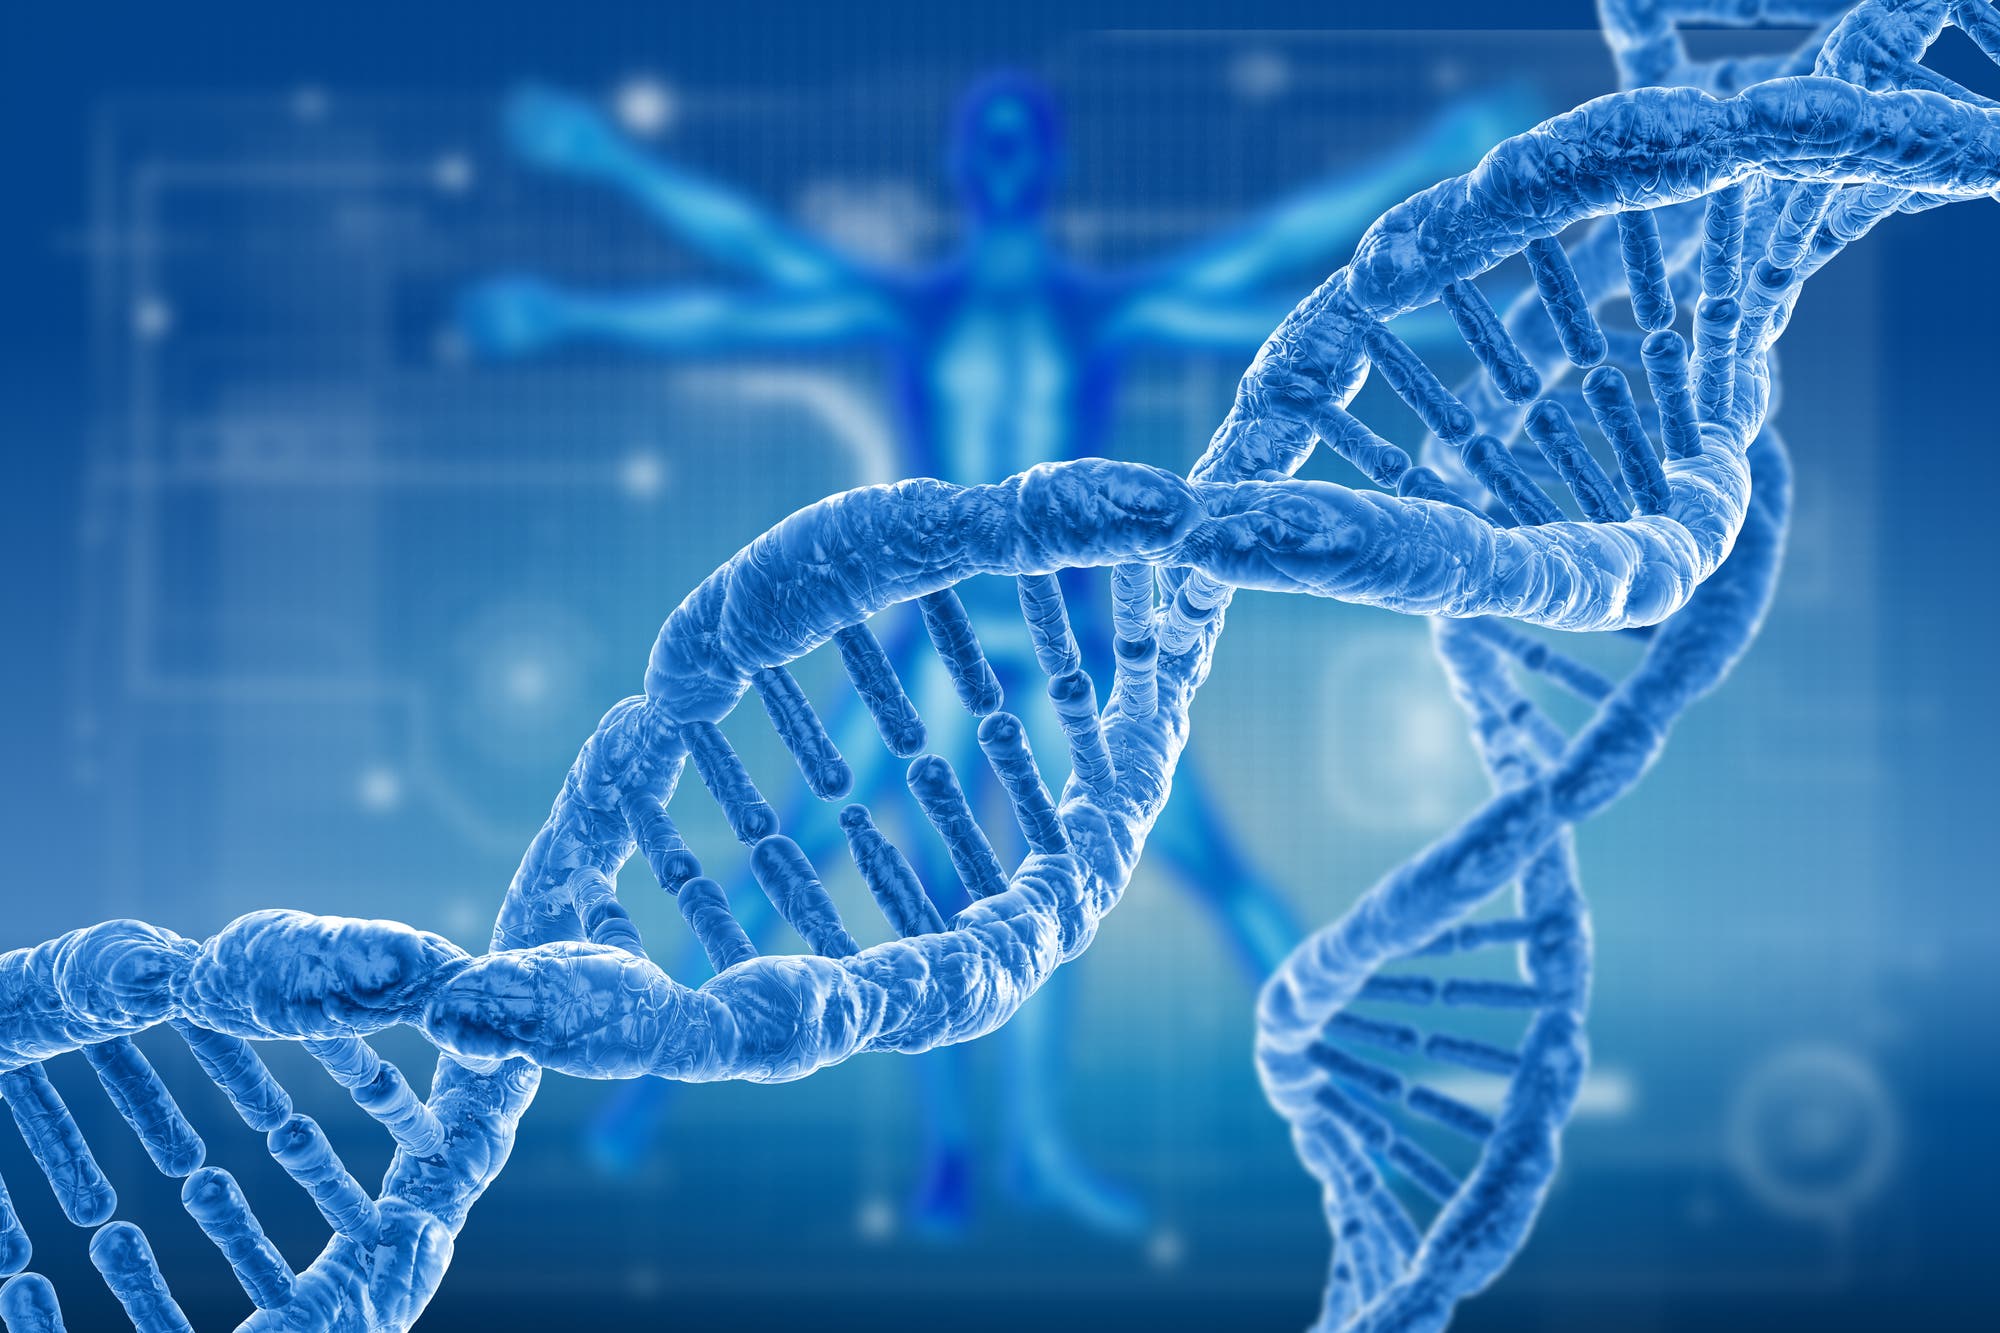 Ein blauer stilisierter DNA-Strang vor blauem Hintergrund